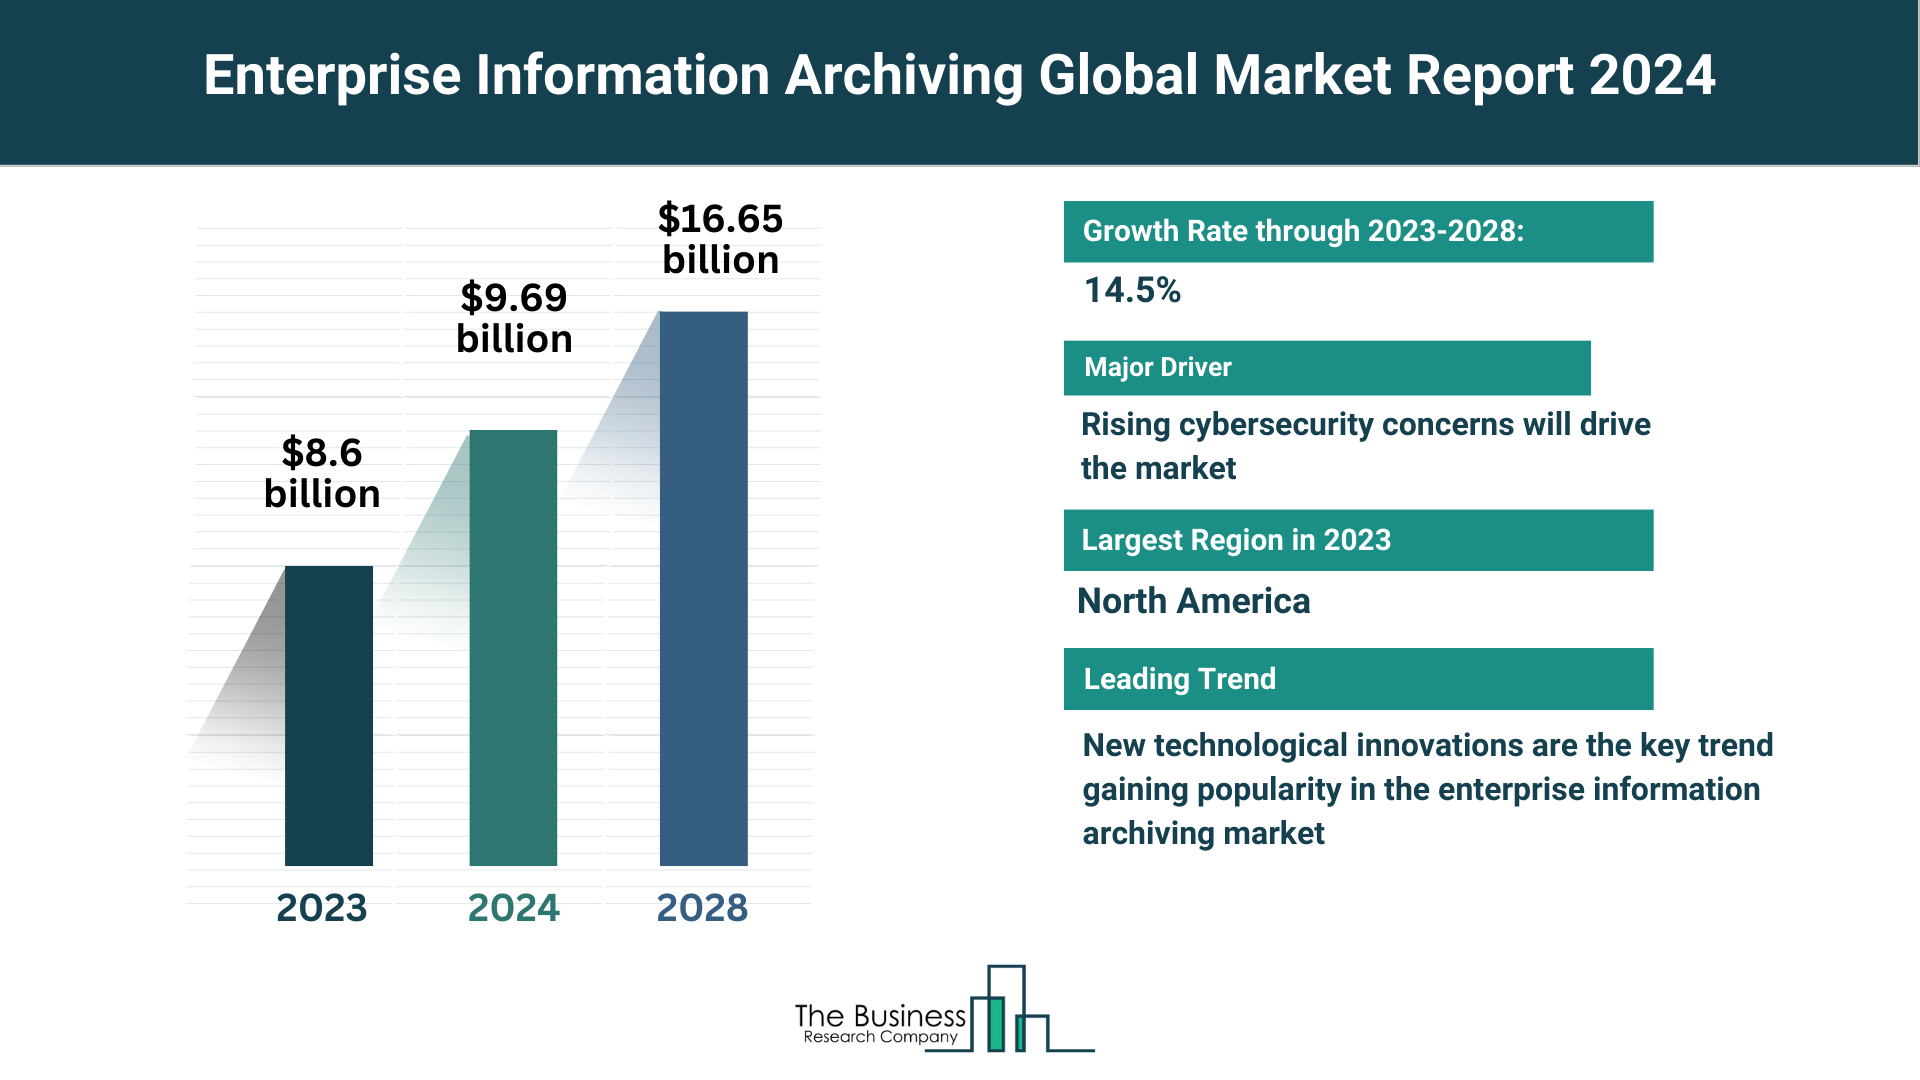 Global Enterprise Information Archiving Market